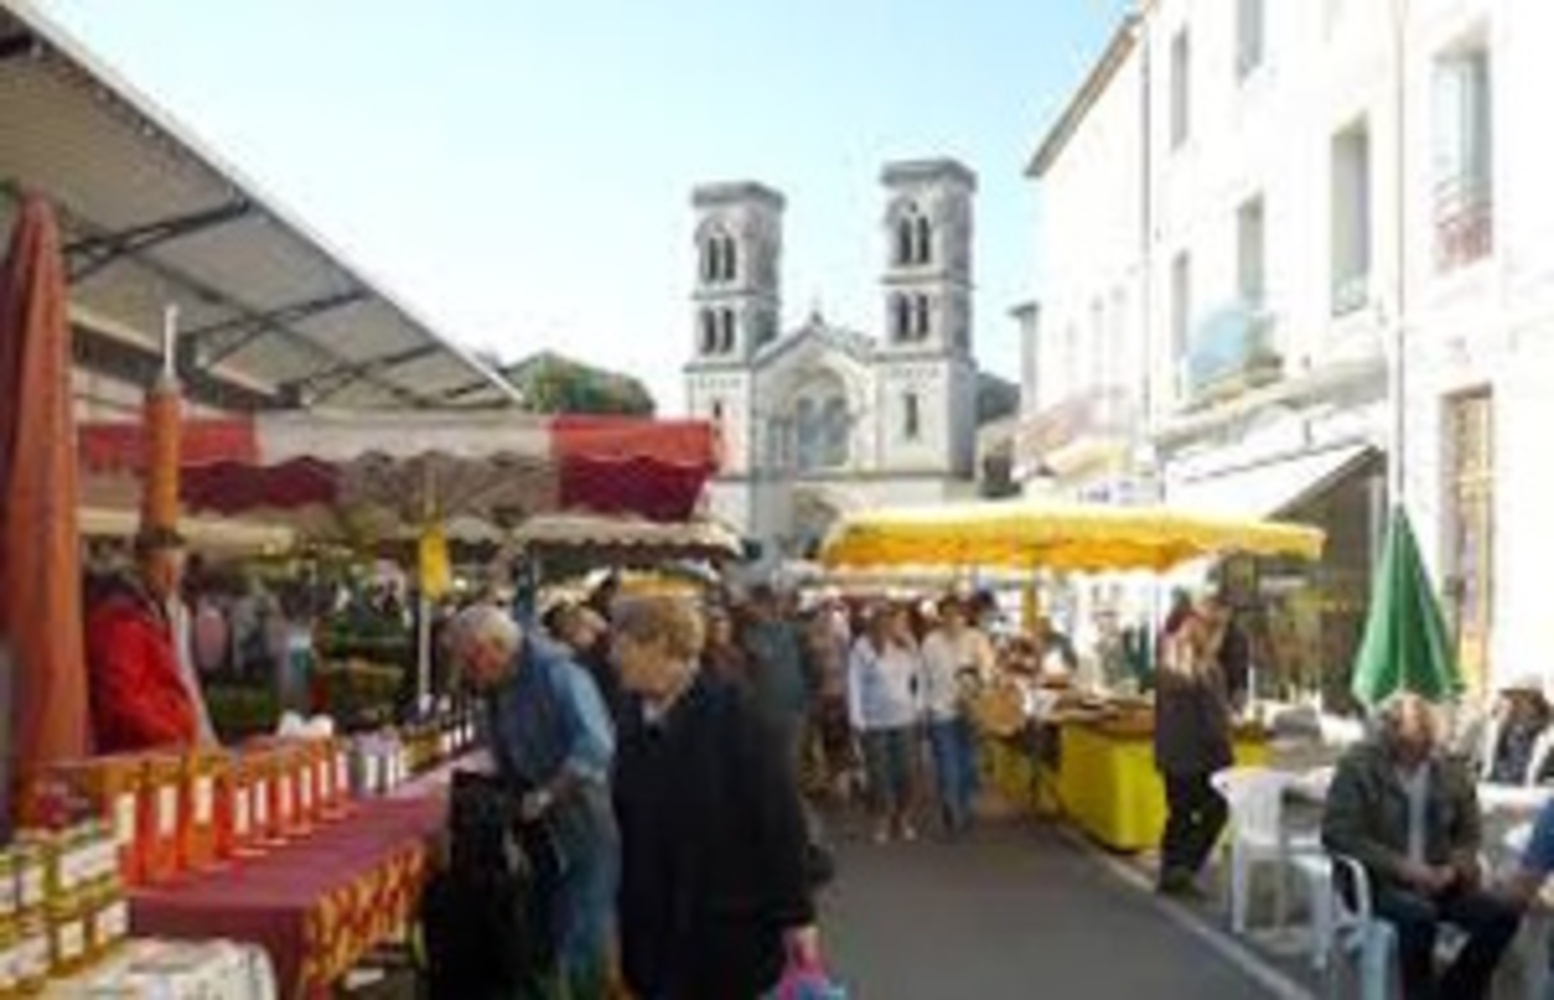 Marché local dans l'Hérault